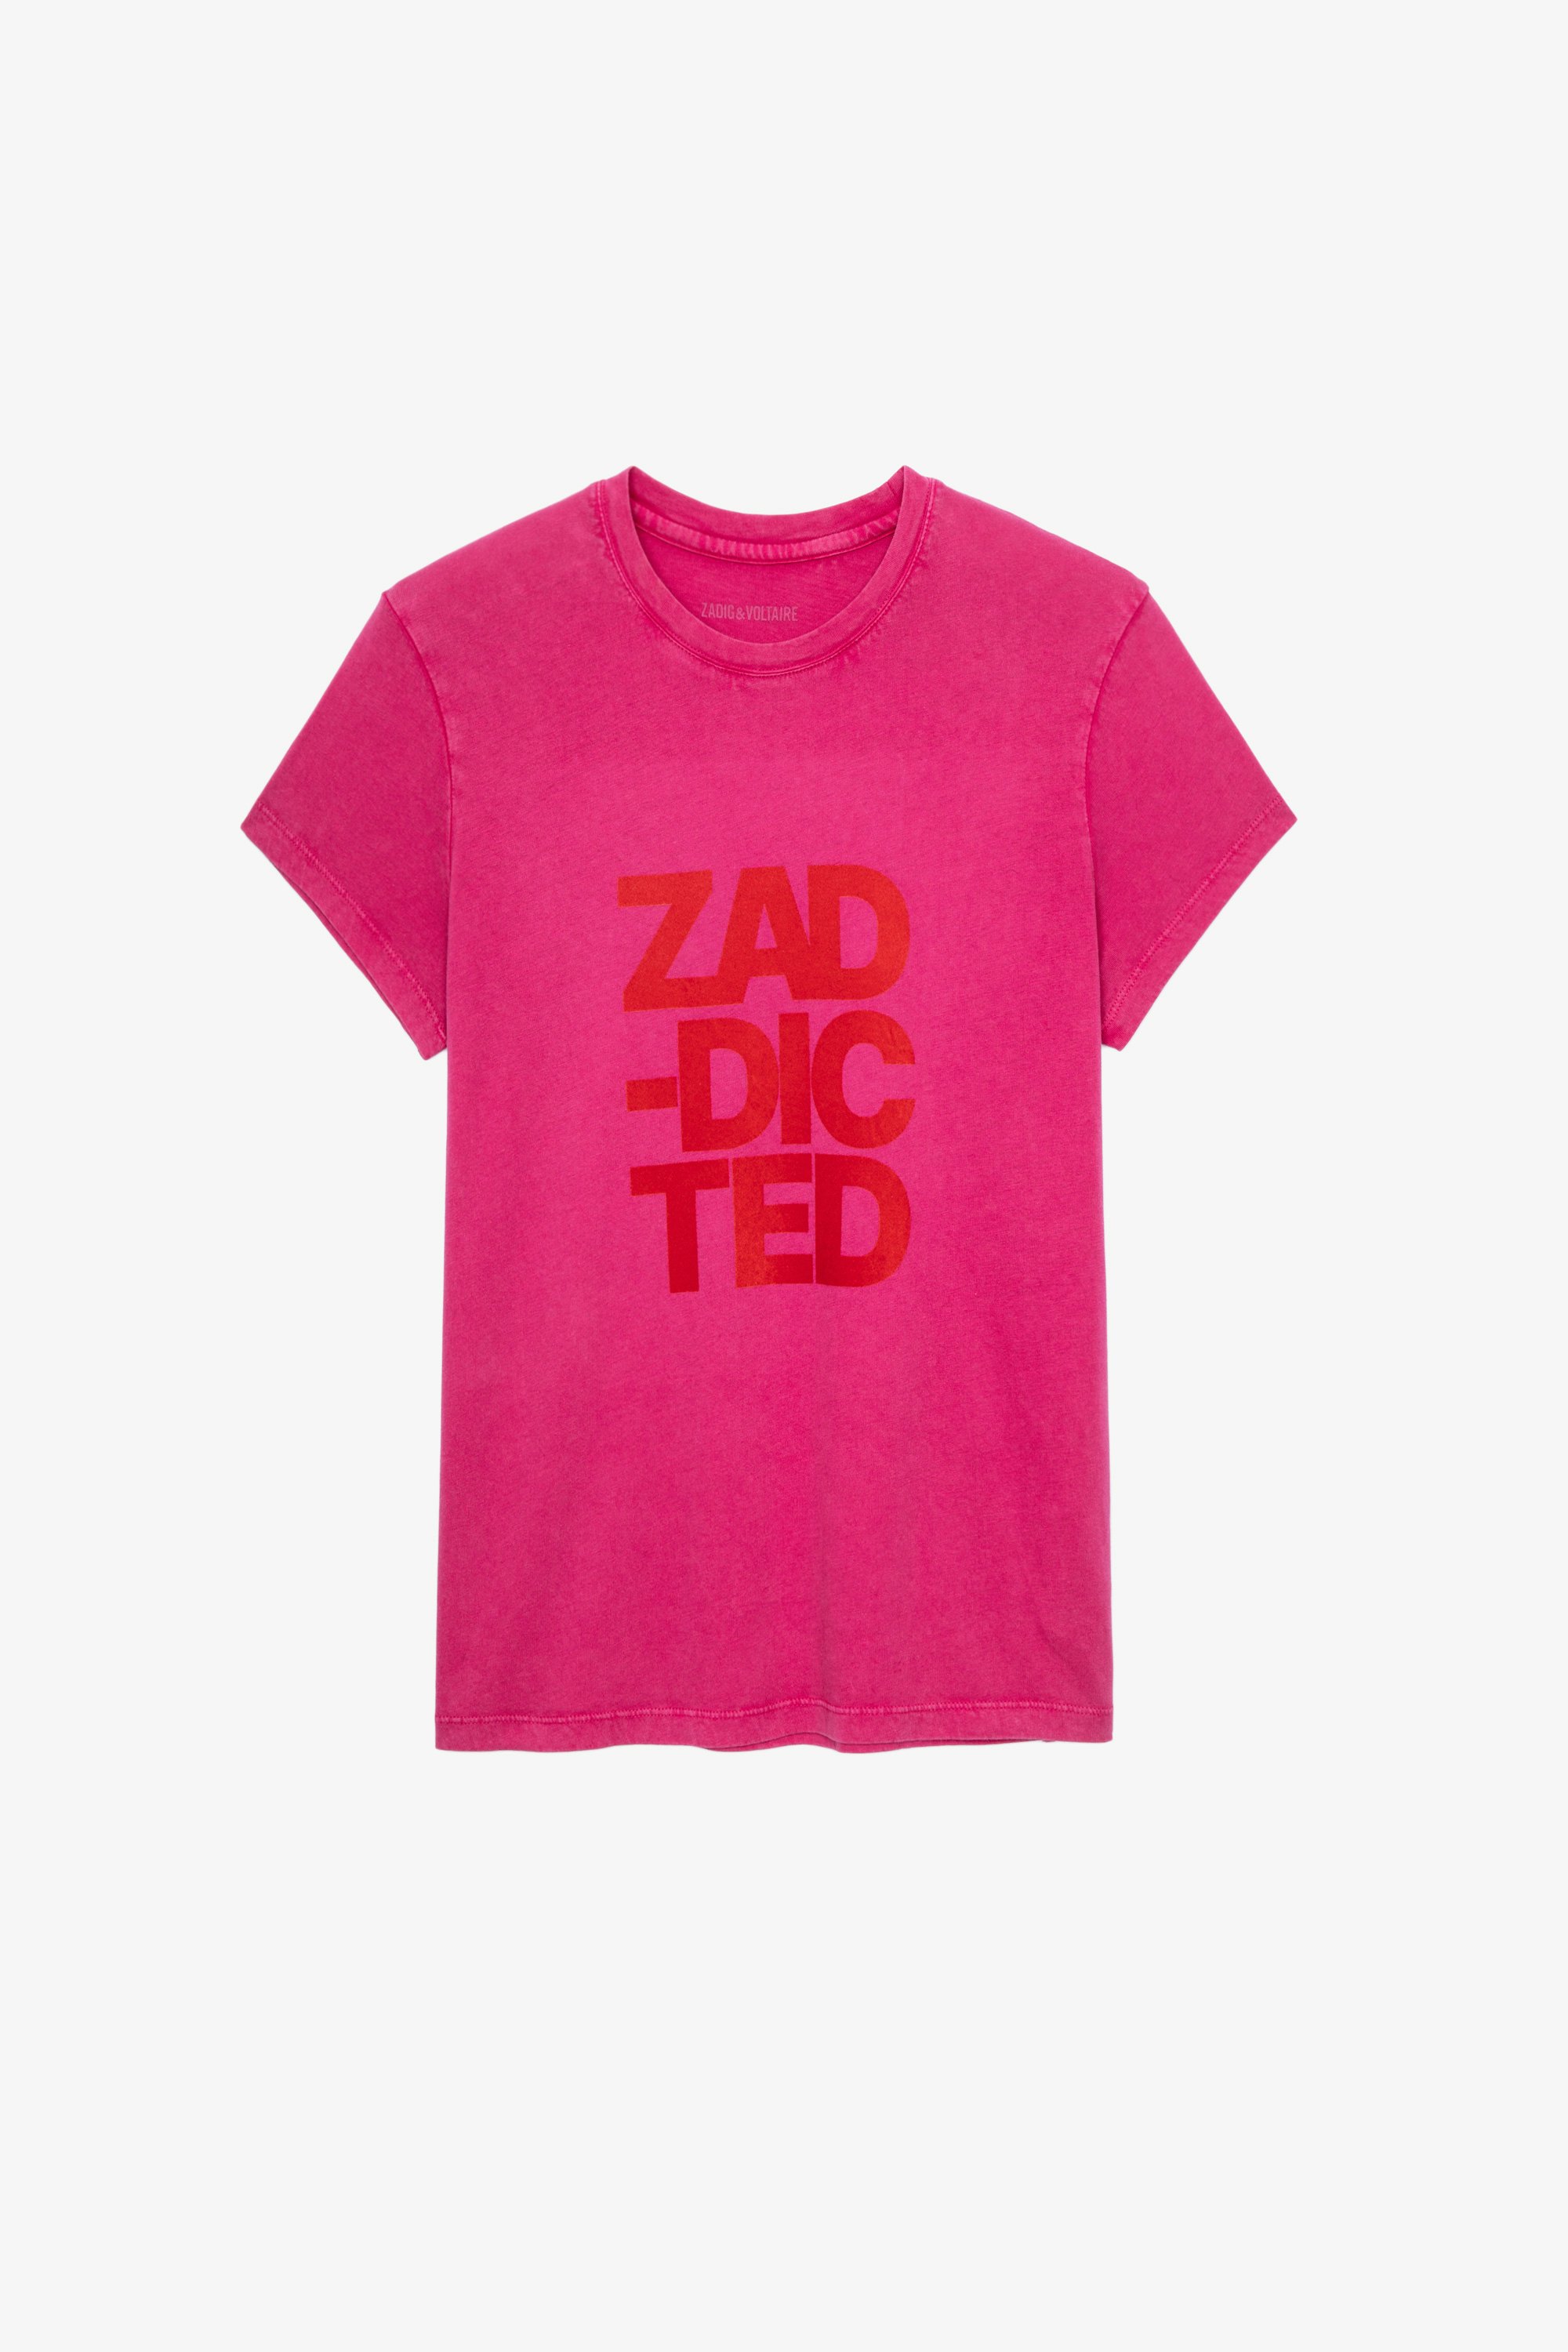 Camiseta Zoe Zaddicted Camiseta de algodón rosa para mujer con el mensaje «Zaddicted»